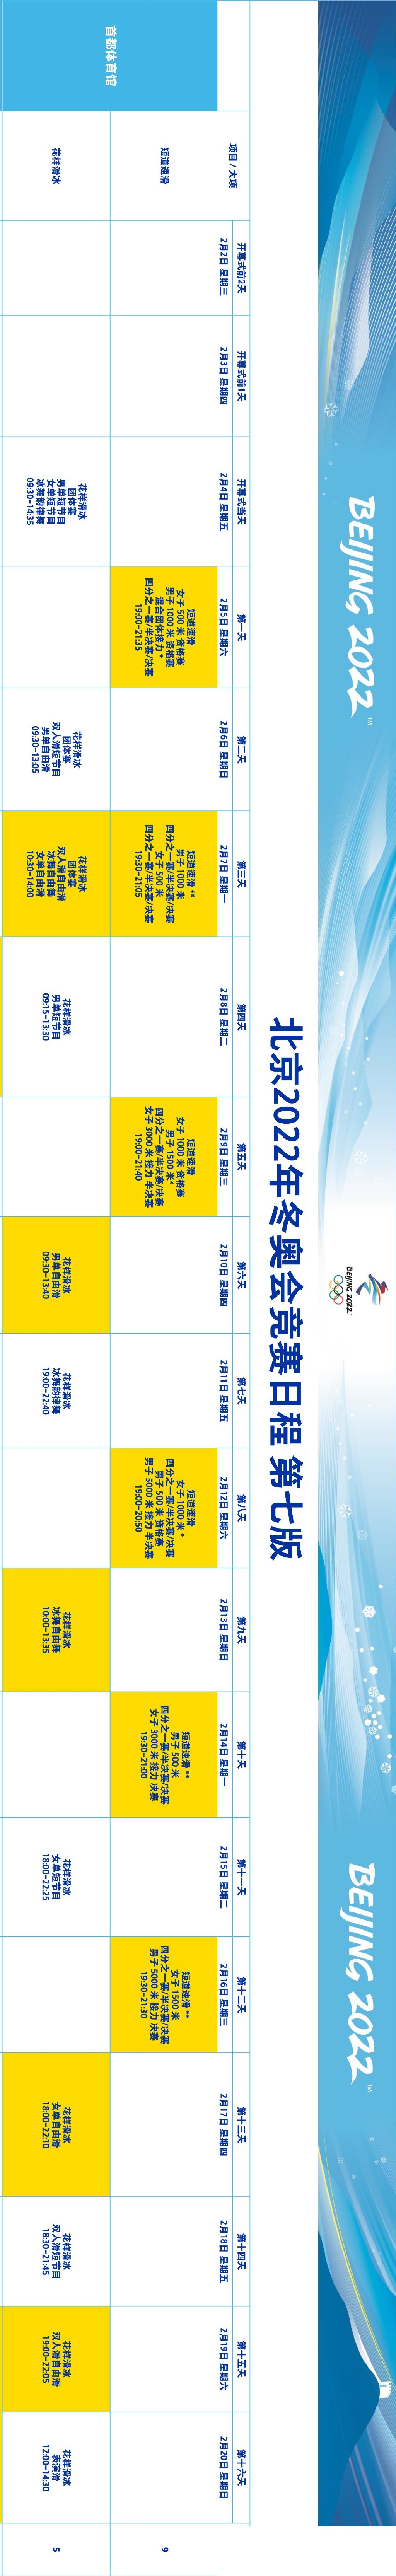 22北京冬奥赛程确定 花滑比赛定在这几天 体育 蛋蛋赞